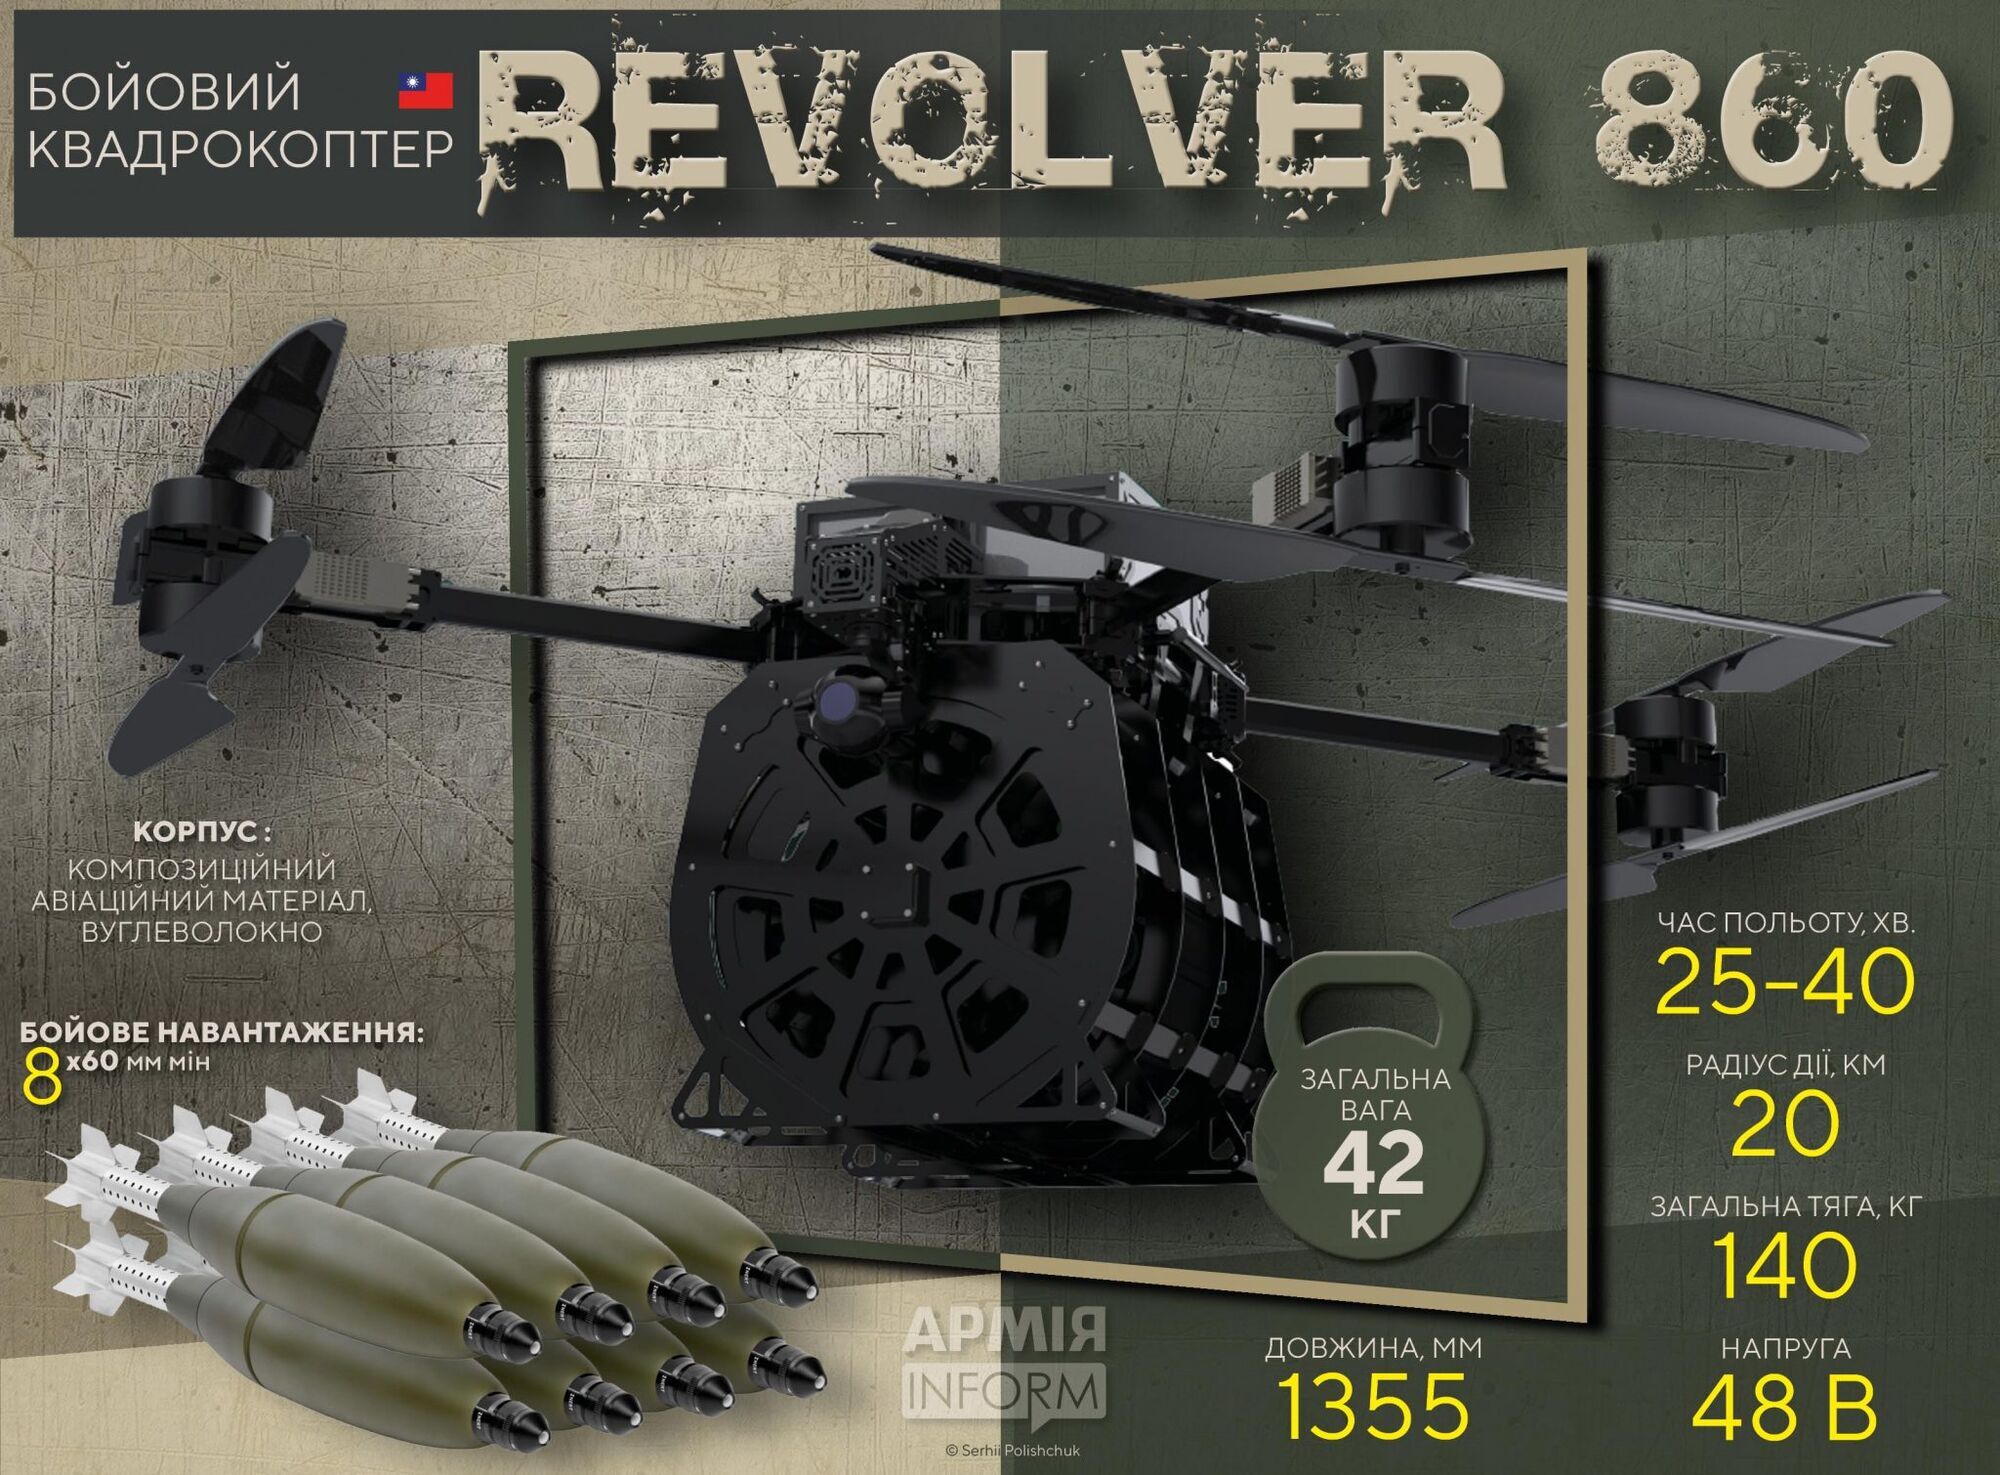 Характеристики дрона Revolver 860